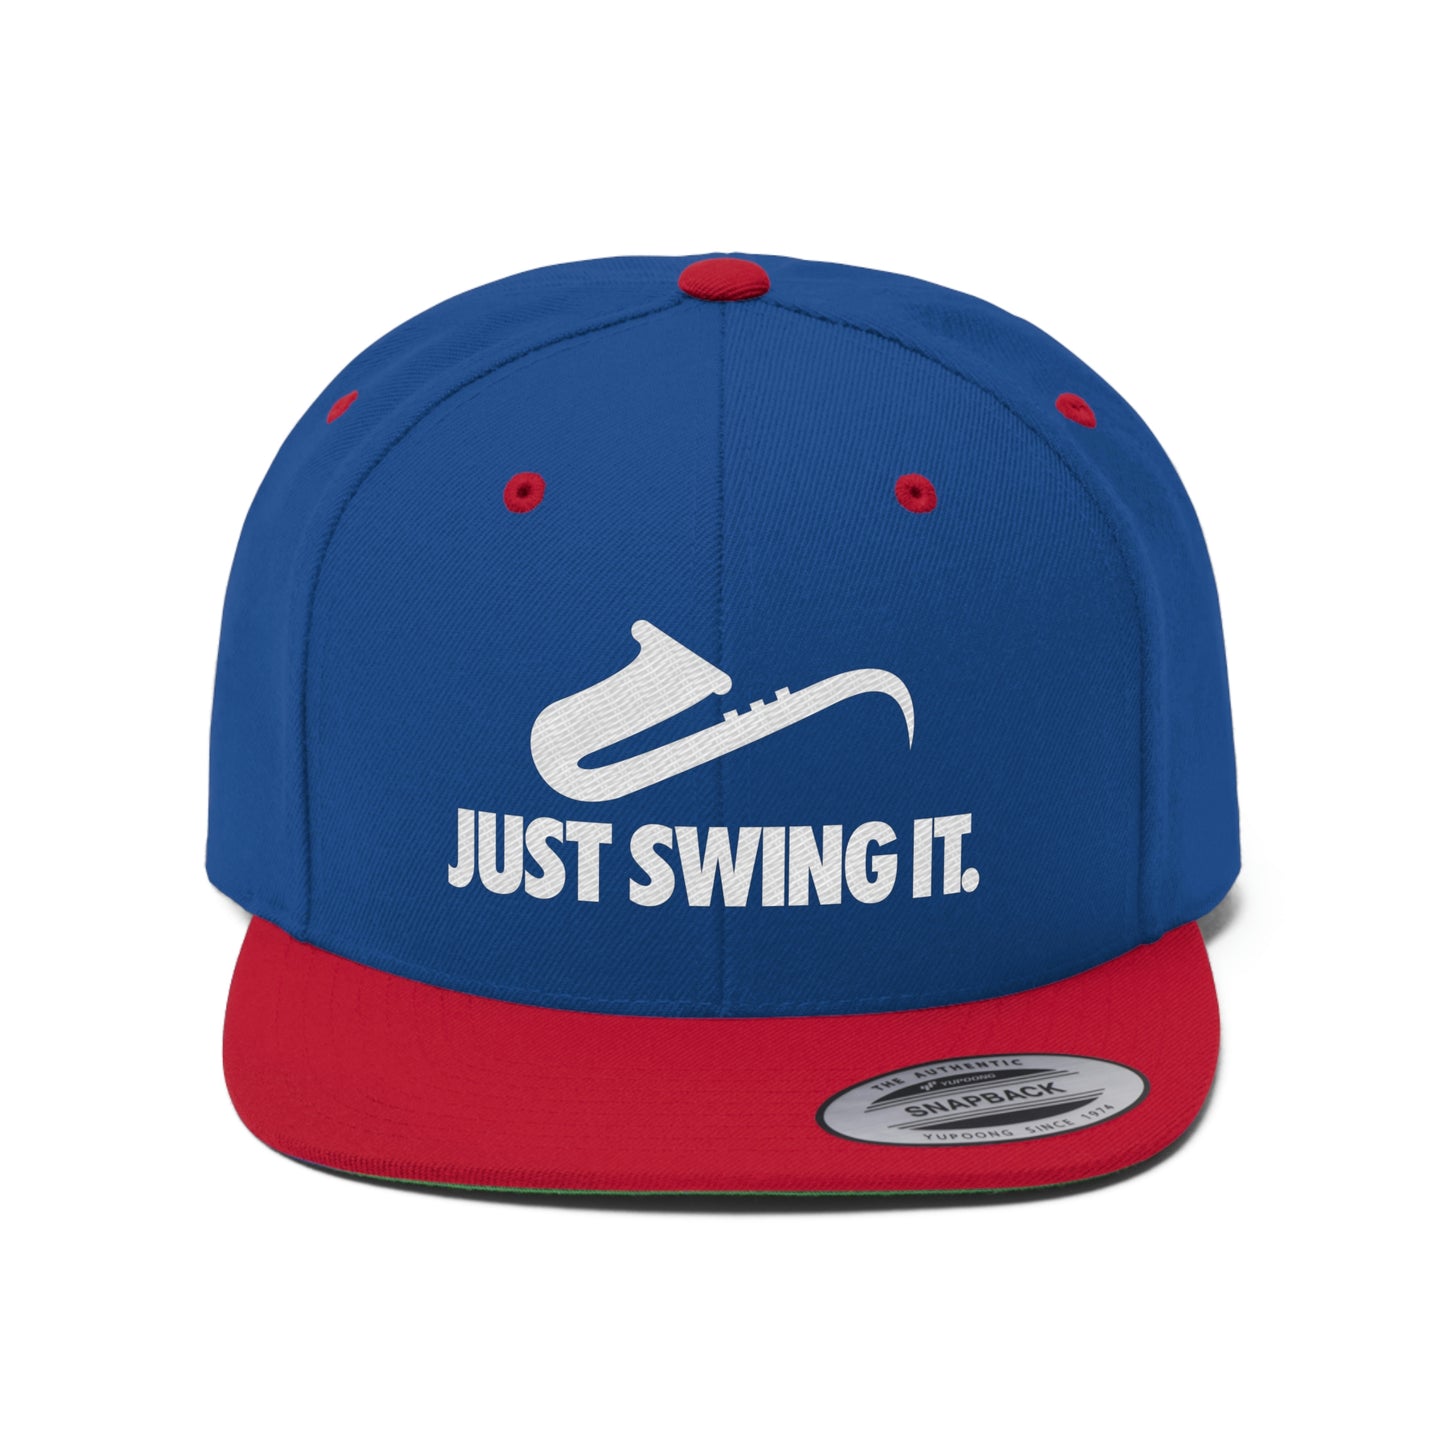 Just Swing It - Unisex Flat Bill Hat